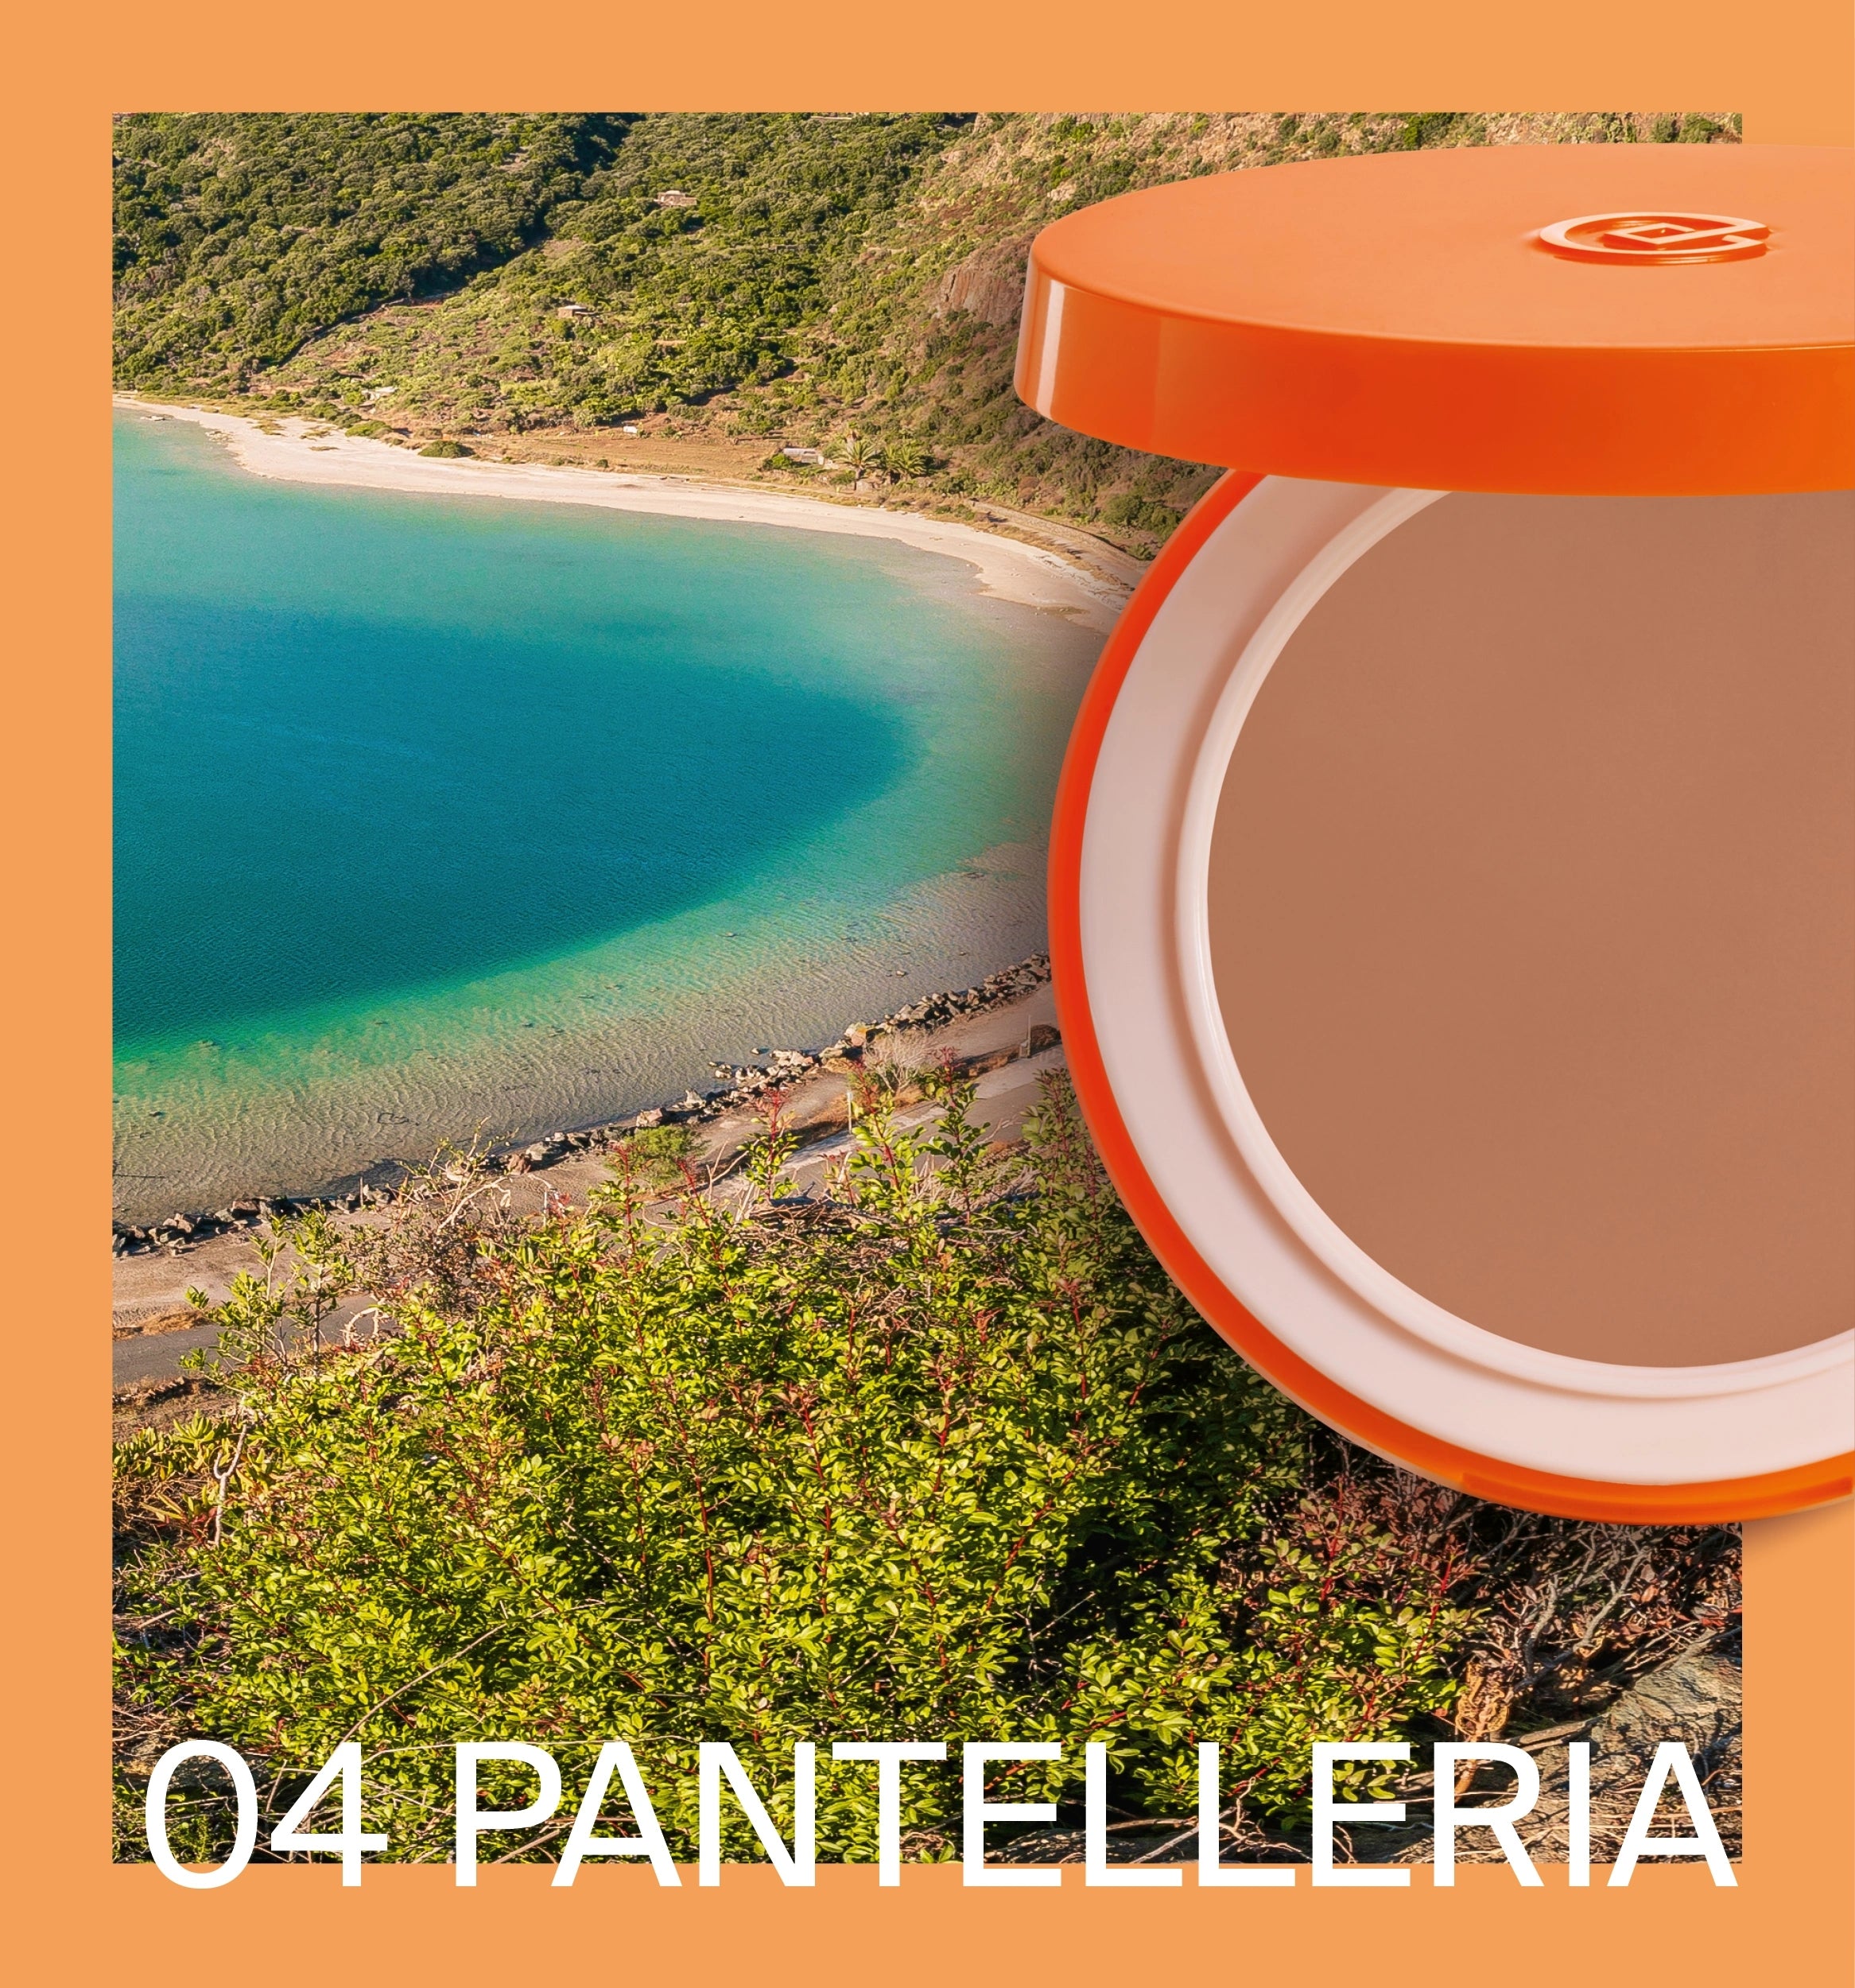 Collistar MEDITERRANEA Fondotinta Compatto Solare SPF 15 - REFILL 04 Pantelleria